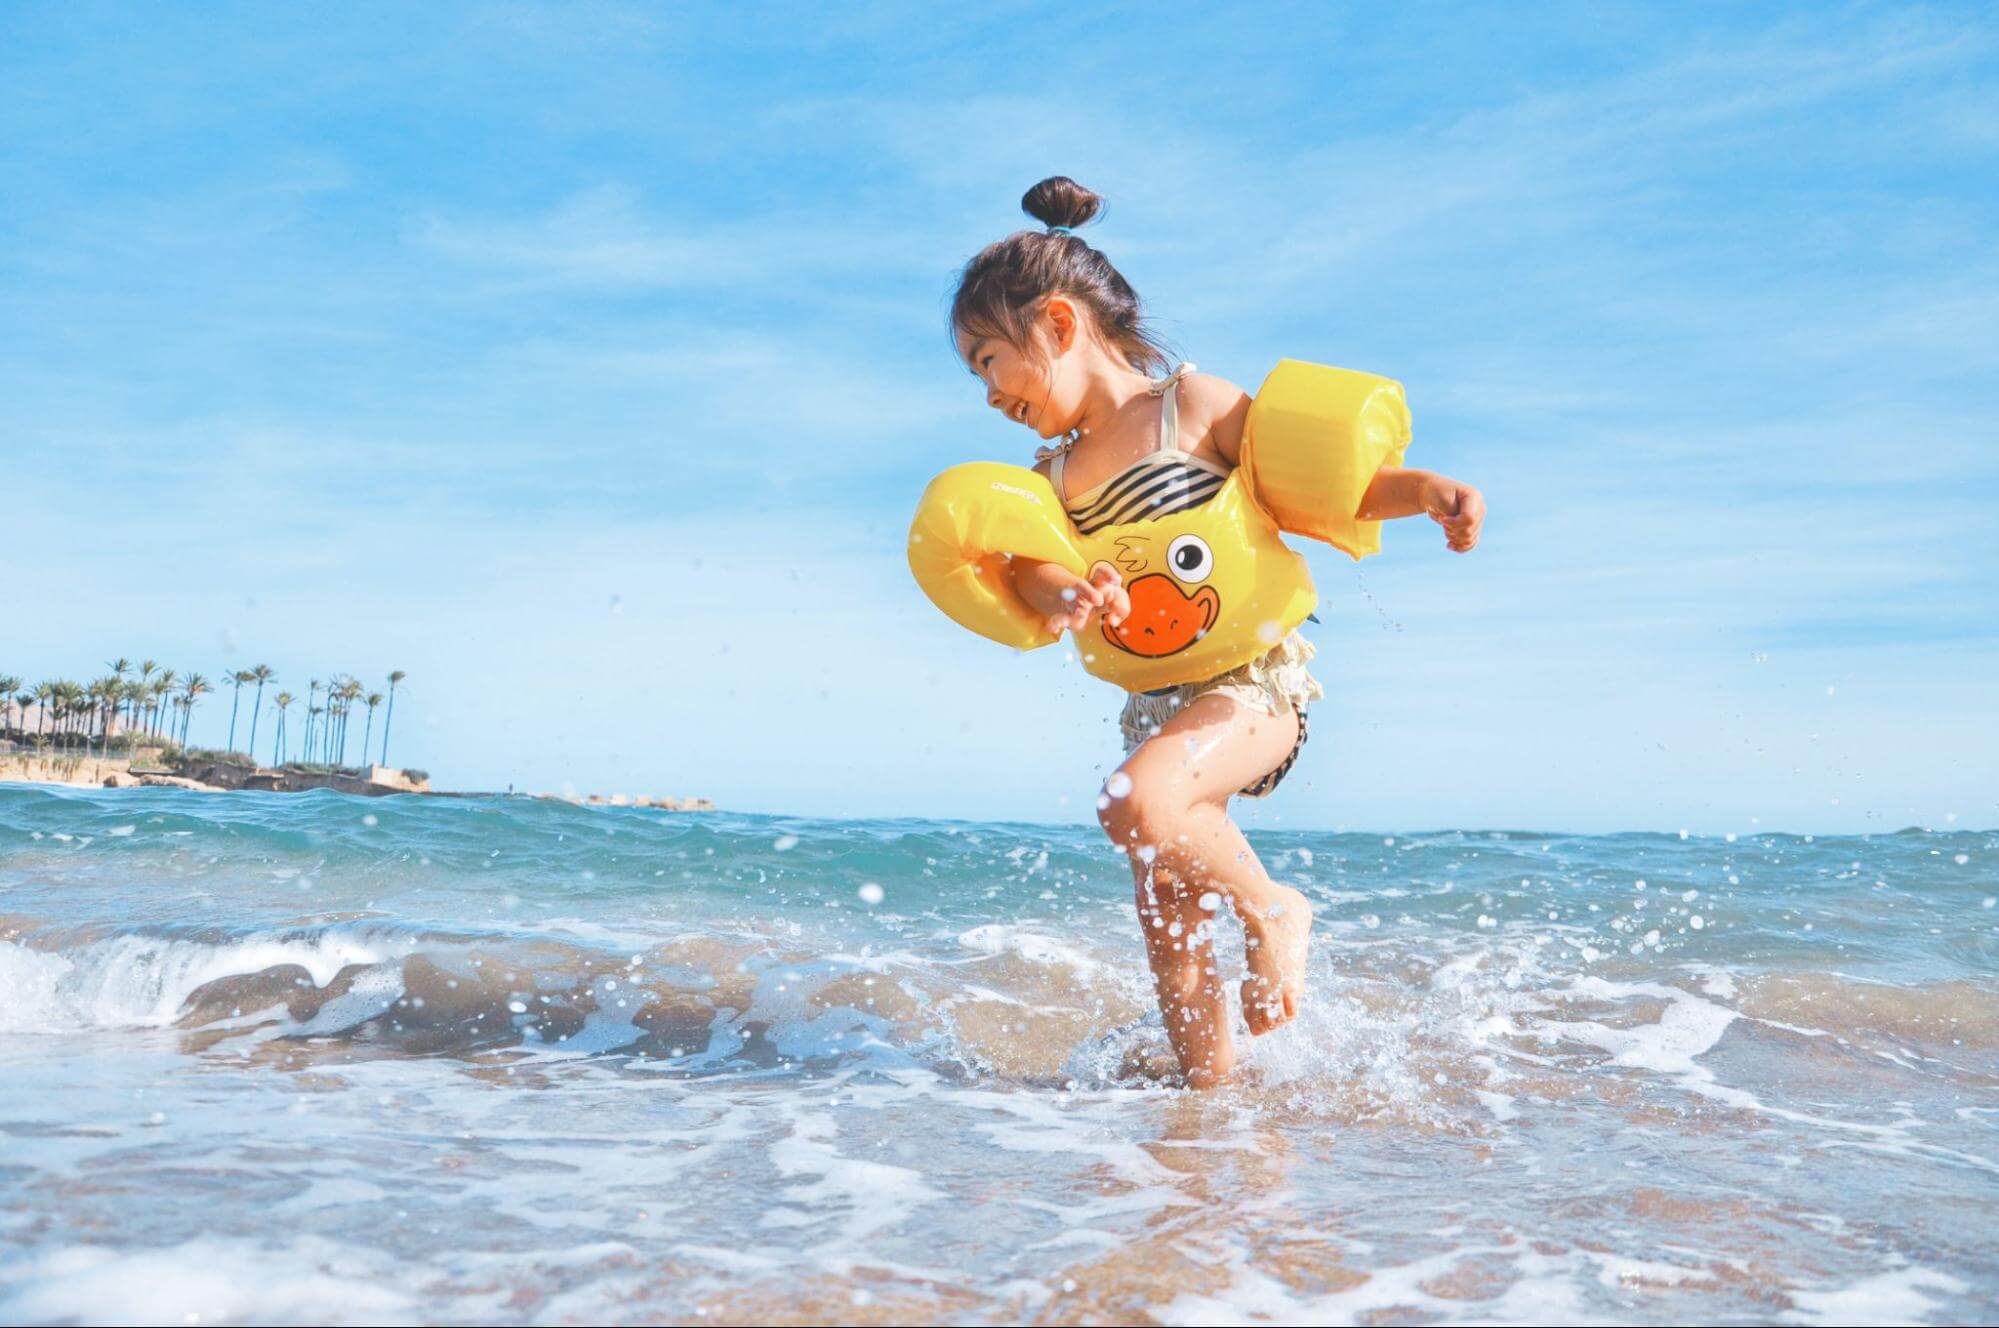 uma menina de aproximadamente 3 anos está brincando na praia, com os pés no mar. Ela veste um maiô colorido e boias nos braços, e está sorrindo enquanto pula ondas